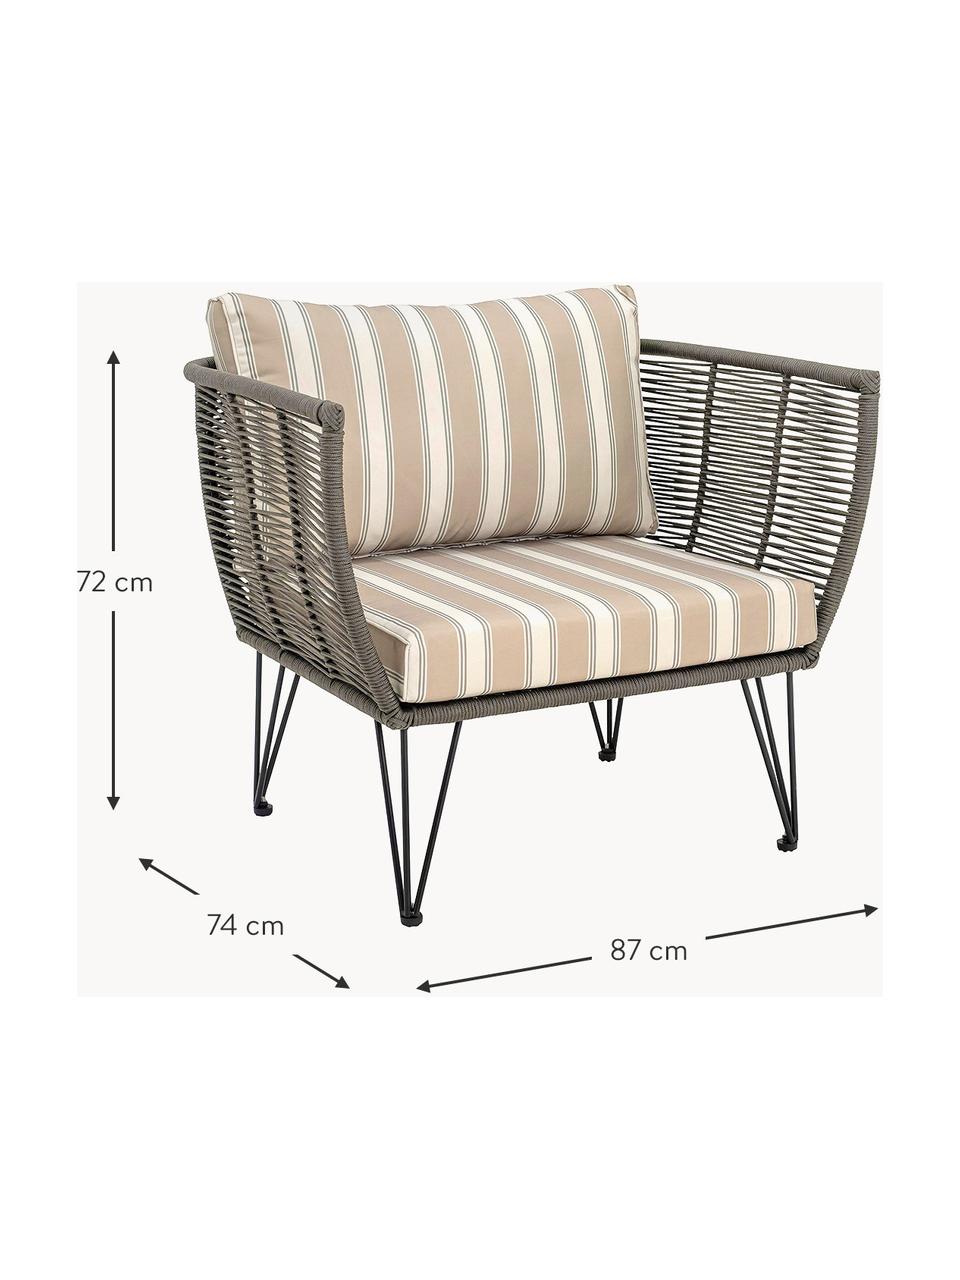 Tuin fauteuil Mundo met kunststoffen vlechtwerk, Frame: metaal, gepoedercoat, Grijsgroen, beige/grijs, B 87 x D 74 cm